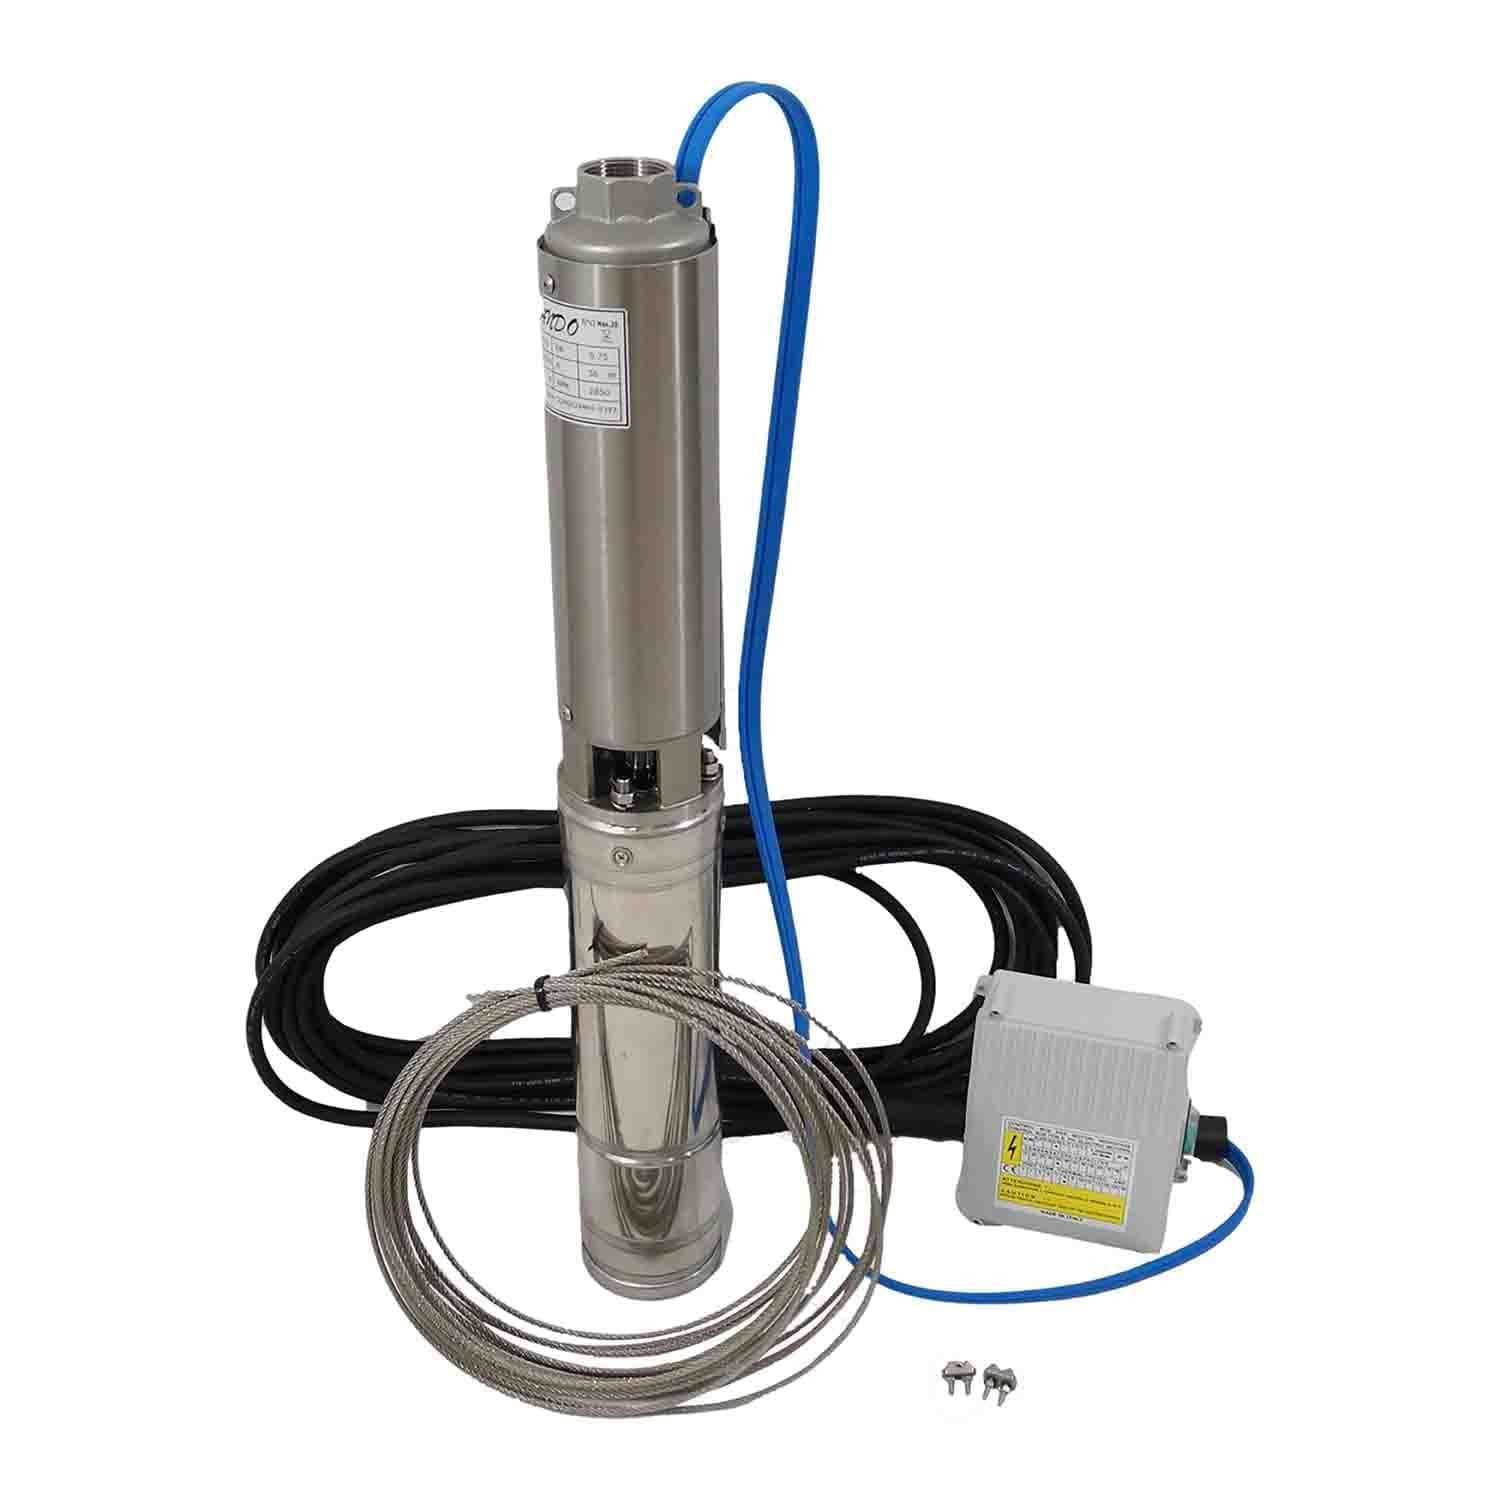 Acheter Pompe de forage électrique manuelle PDTO pompe de